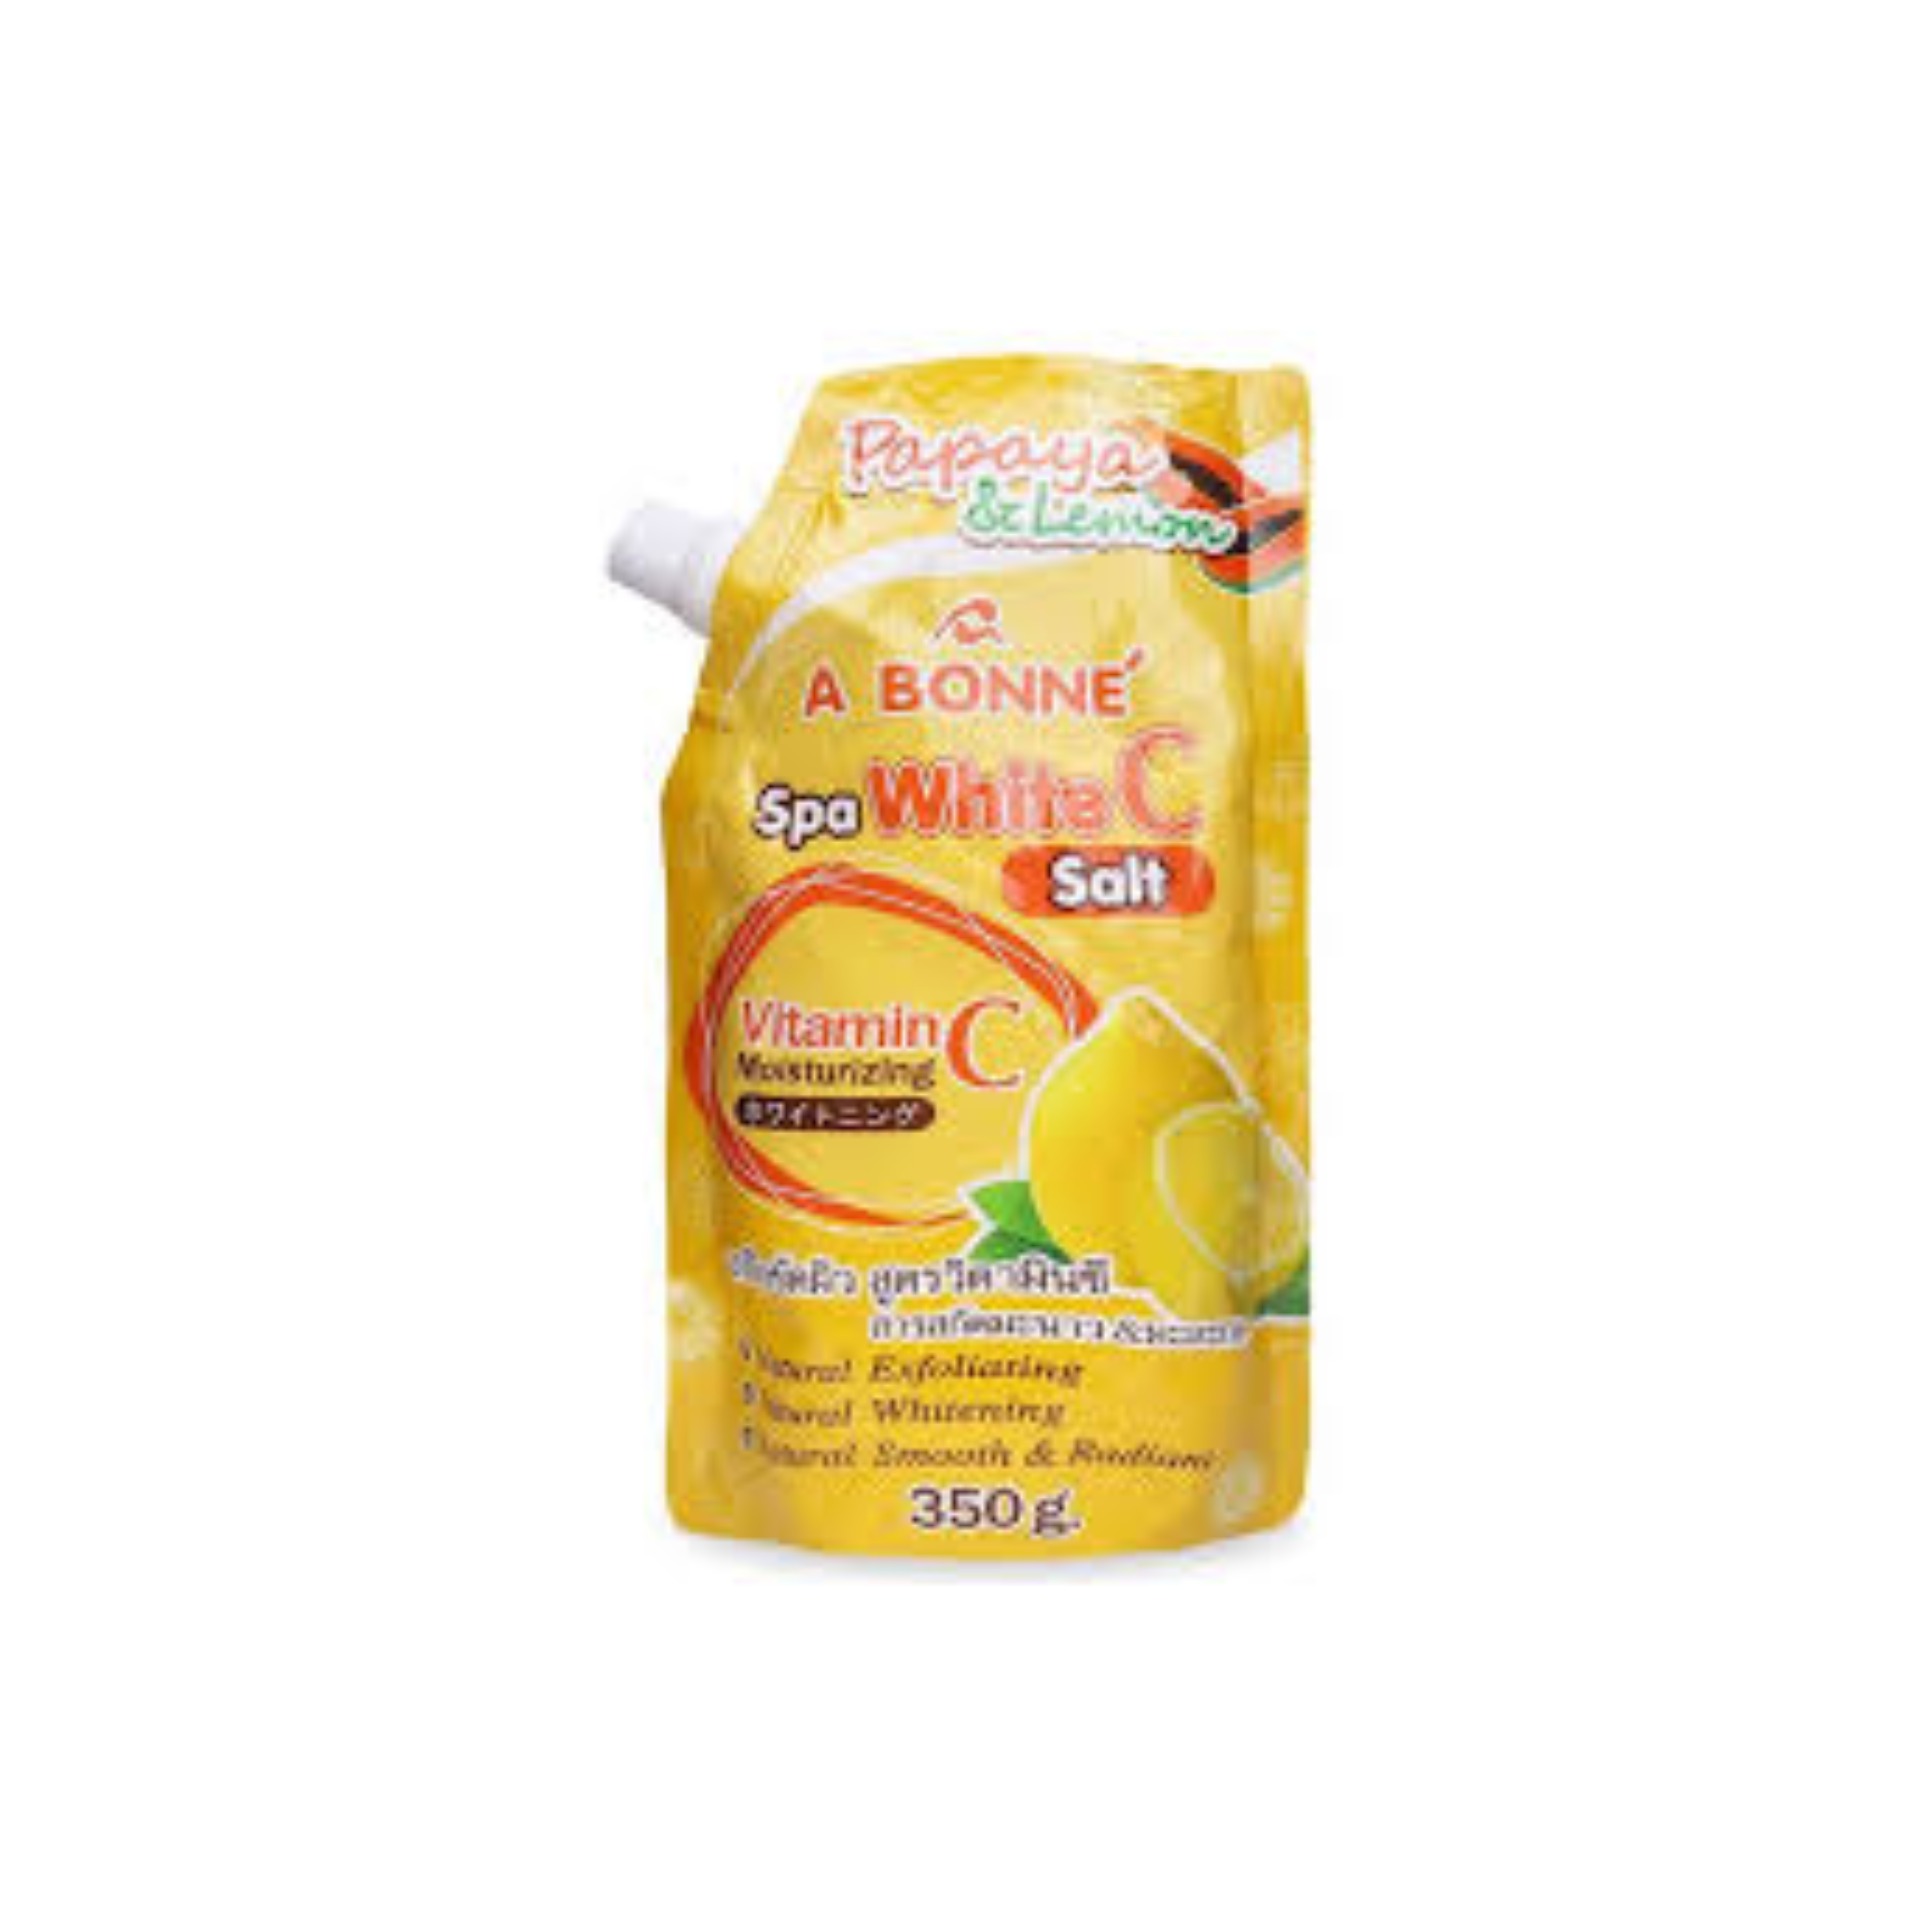 Muối Tắm Vitamin C Tẩy Tế Bào Chết A Bonne Spa White C Salt Thái Lan 350g